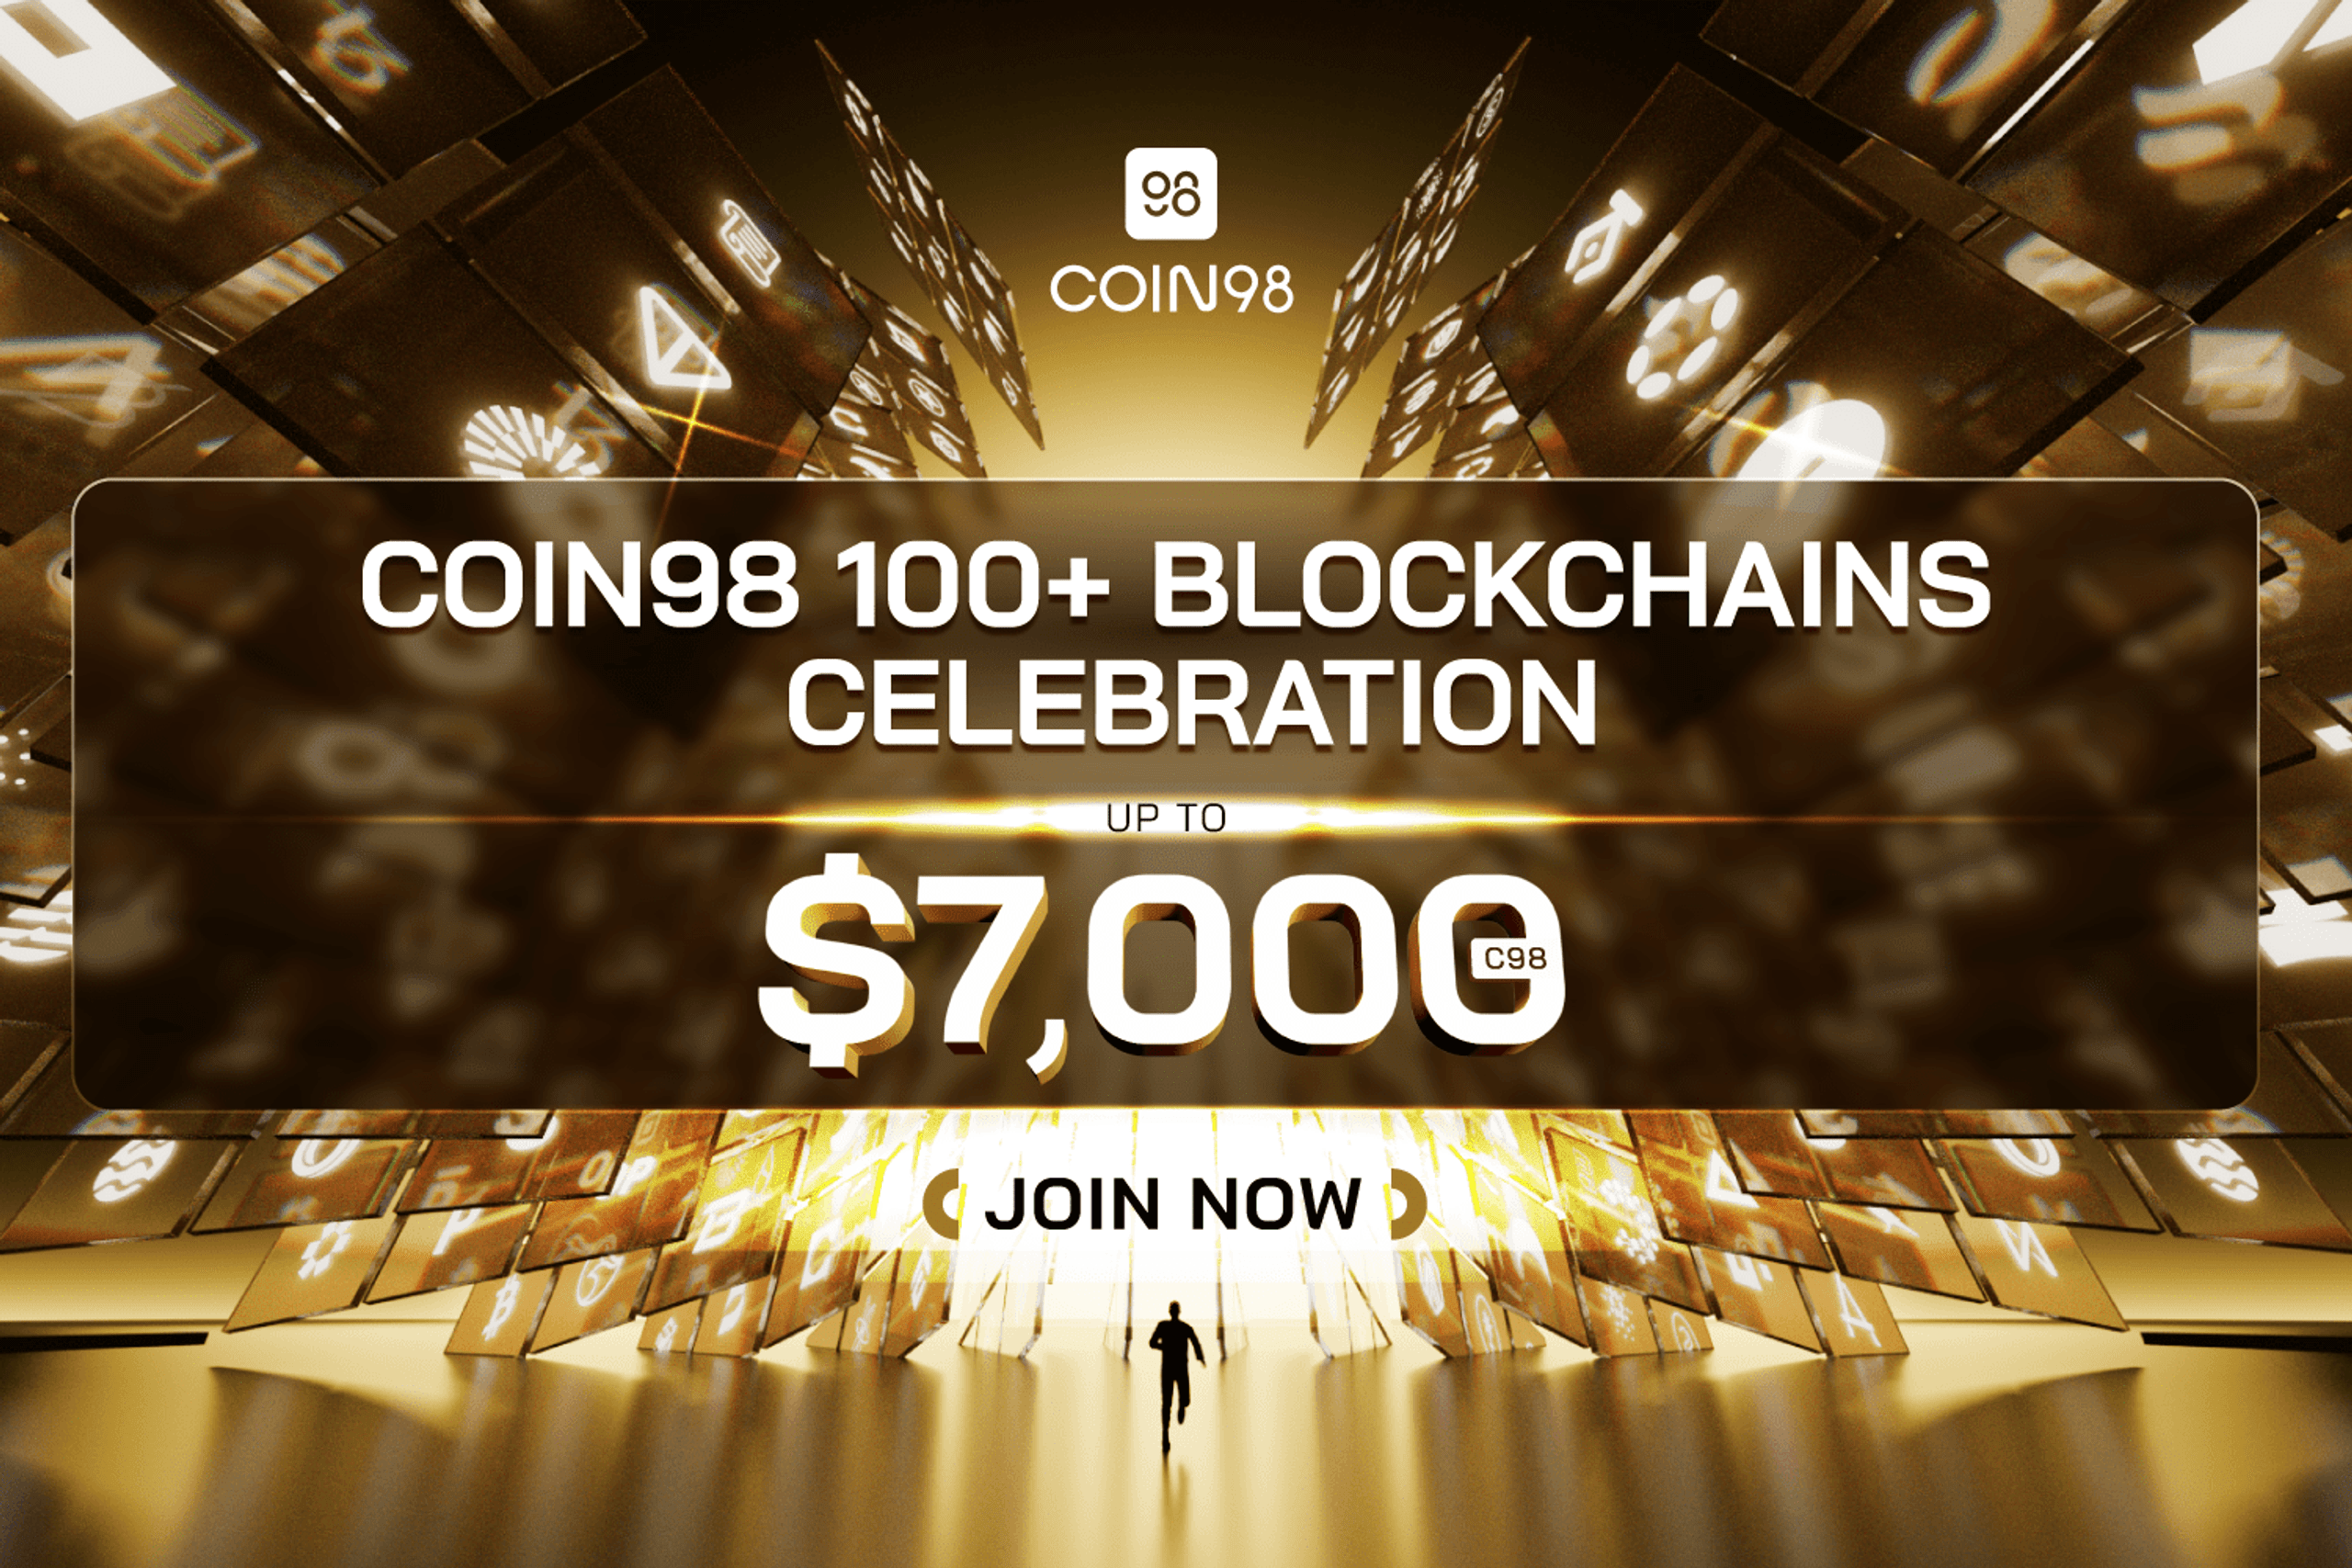 Chinh phục Coin98 100+ Blockchains Celebration nhận thưởng lên đến $7,000